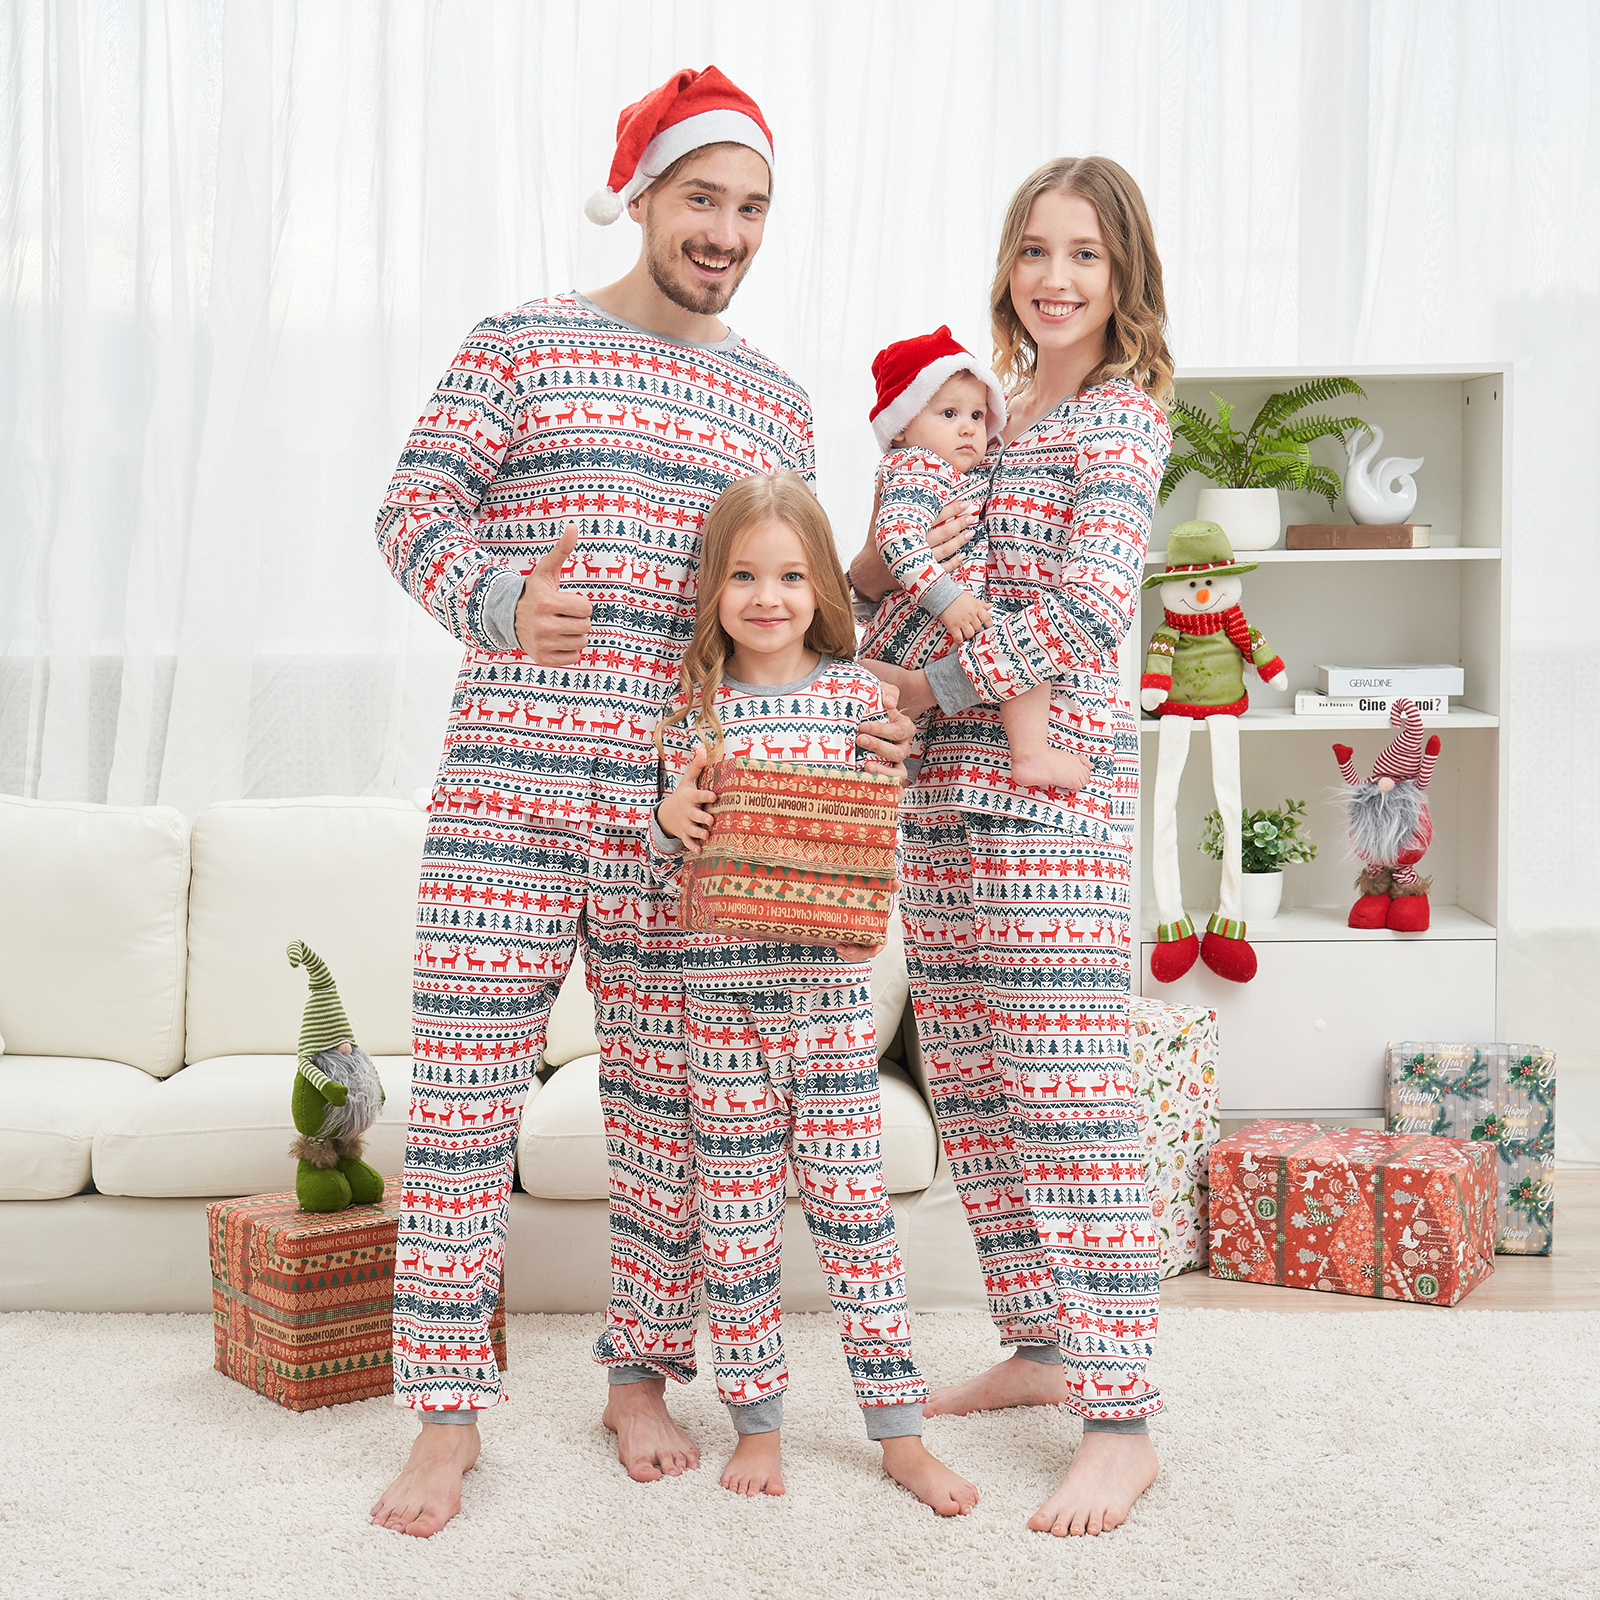 Baozhu Family Matching Reindeer Print Christmas Sleepwear Pajamas Set, 2 Piece (Unisex Baby & Toddler 3M-18M) - image 3 of 15